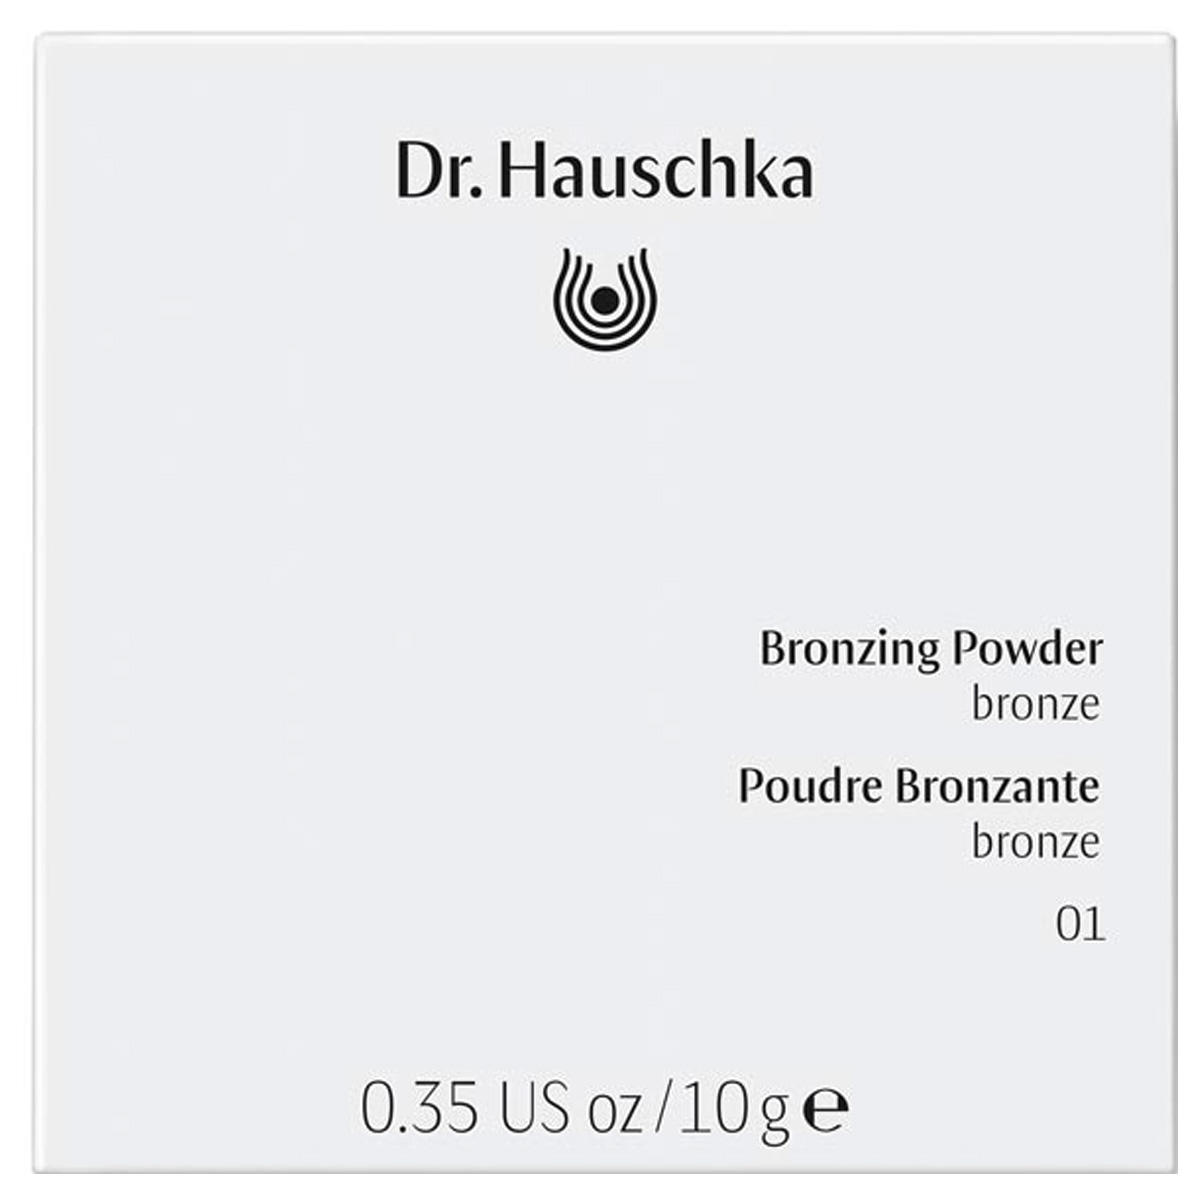 Dr. Hauschka Bronzing Powder 01 bronze, Inhalt 10 g - 3